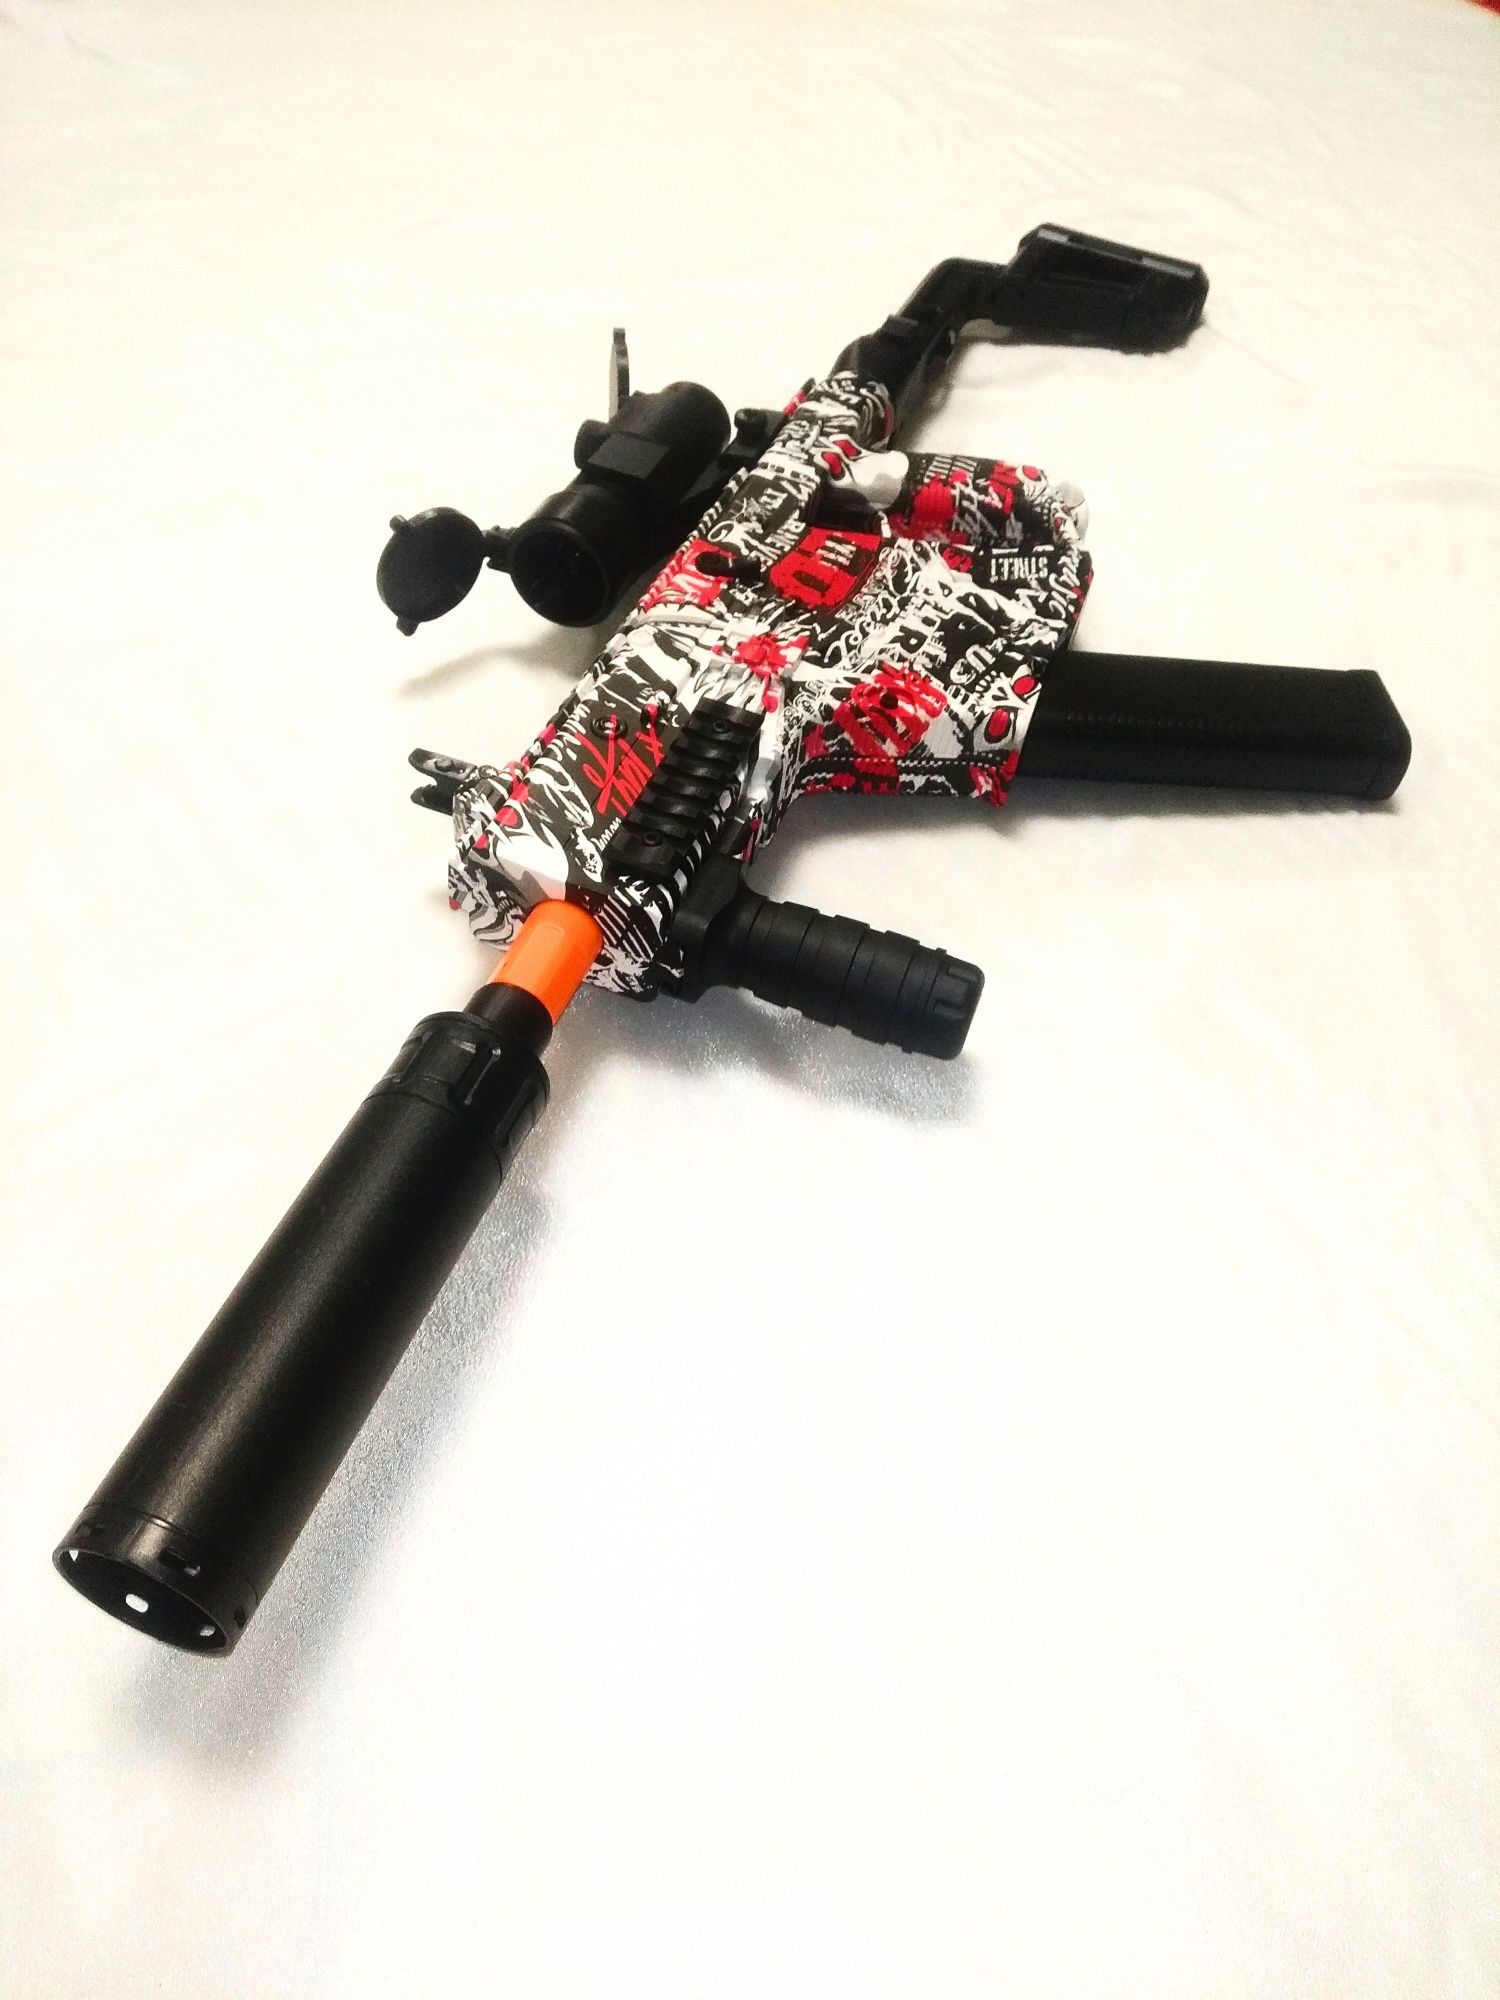 Автомат пистолет пулемет Kriss Vector на пулях орбизы два режима огня